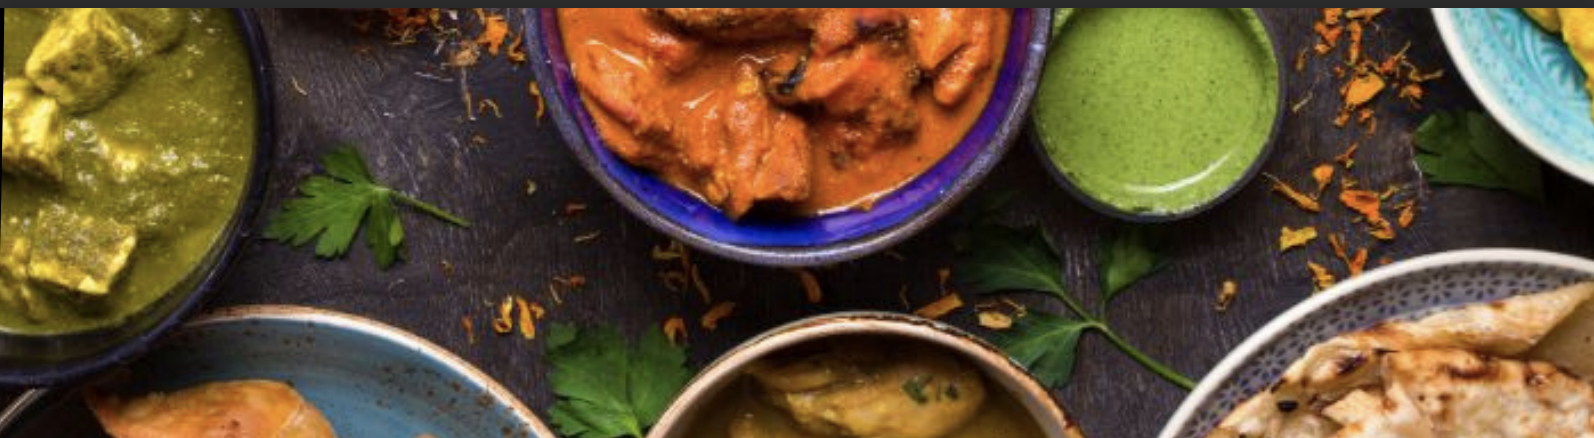 Mughlai chicken curry hoofdgerechten